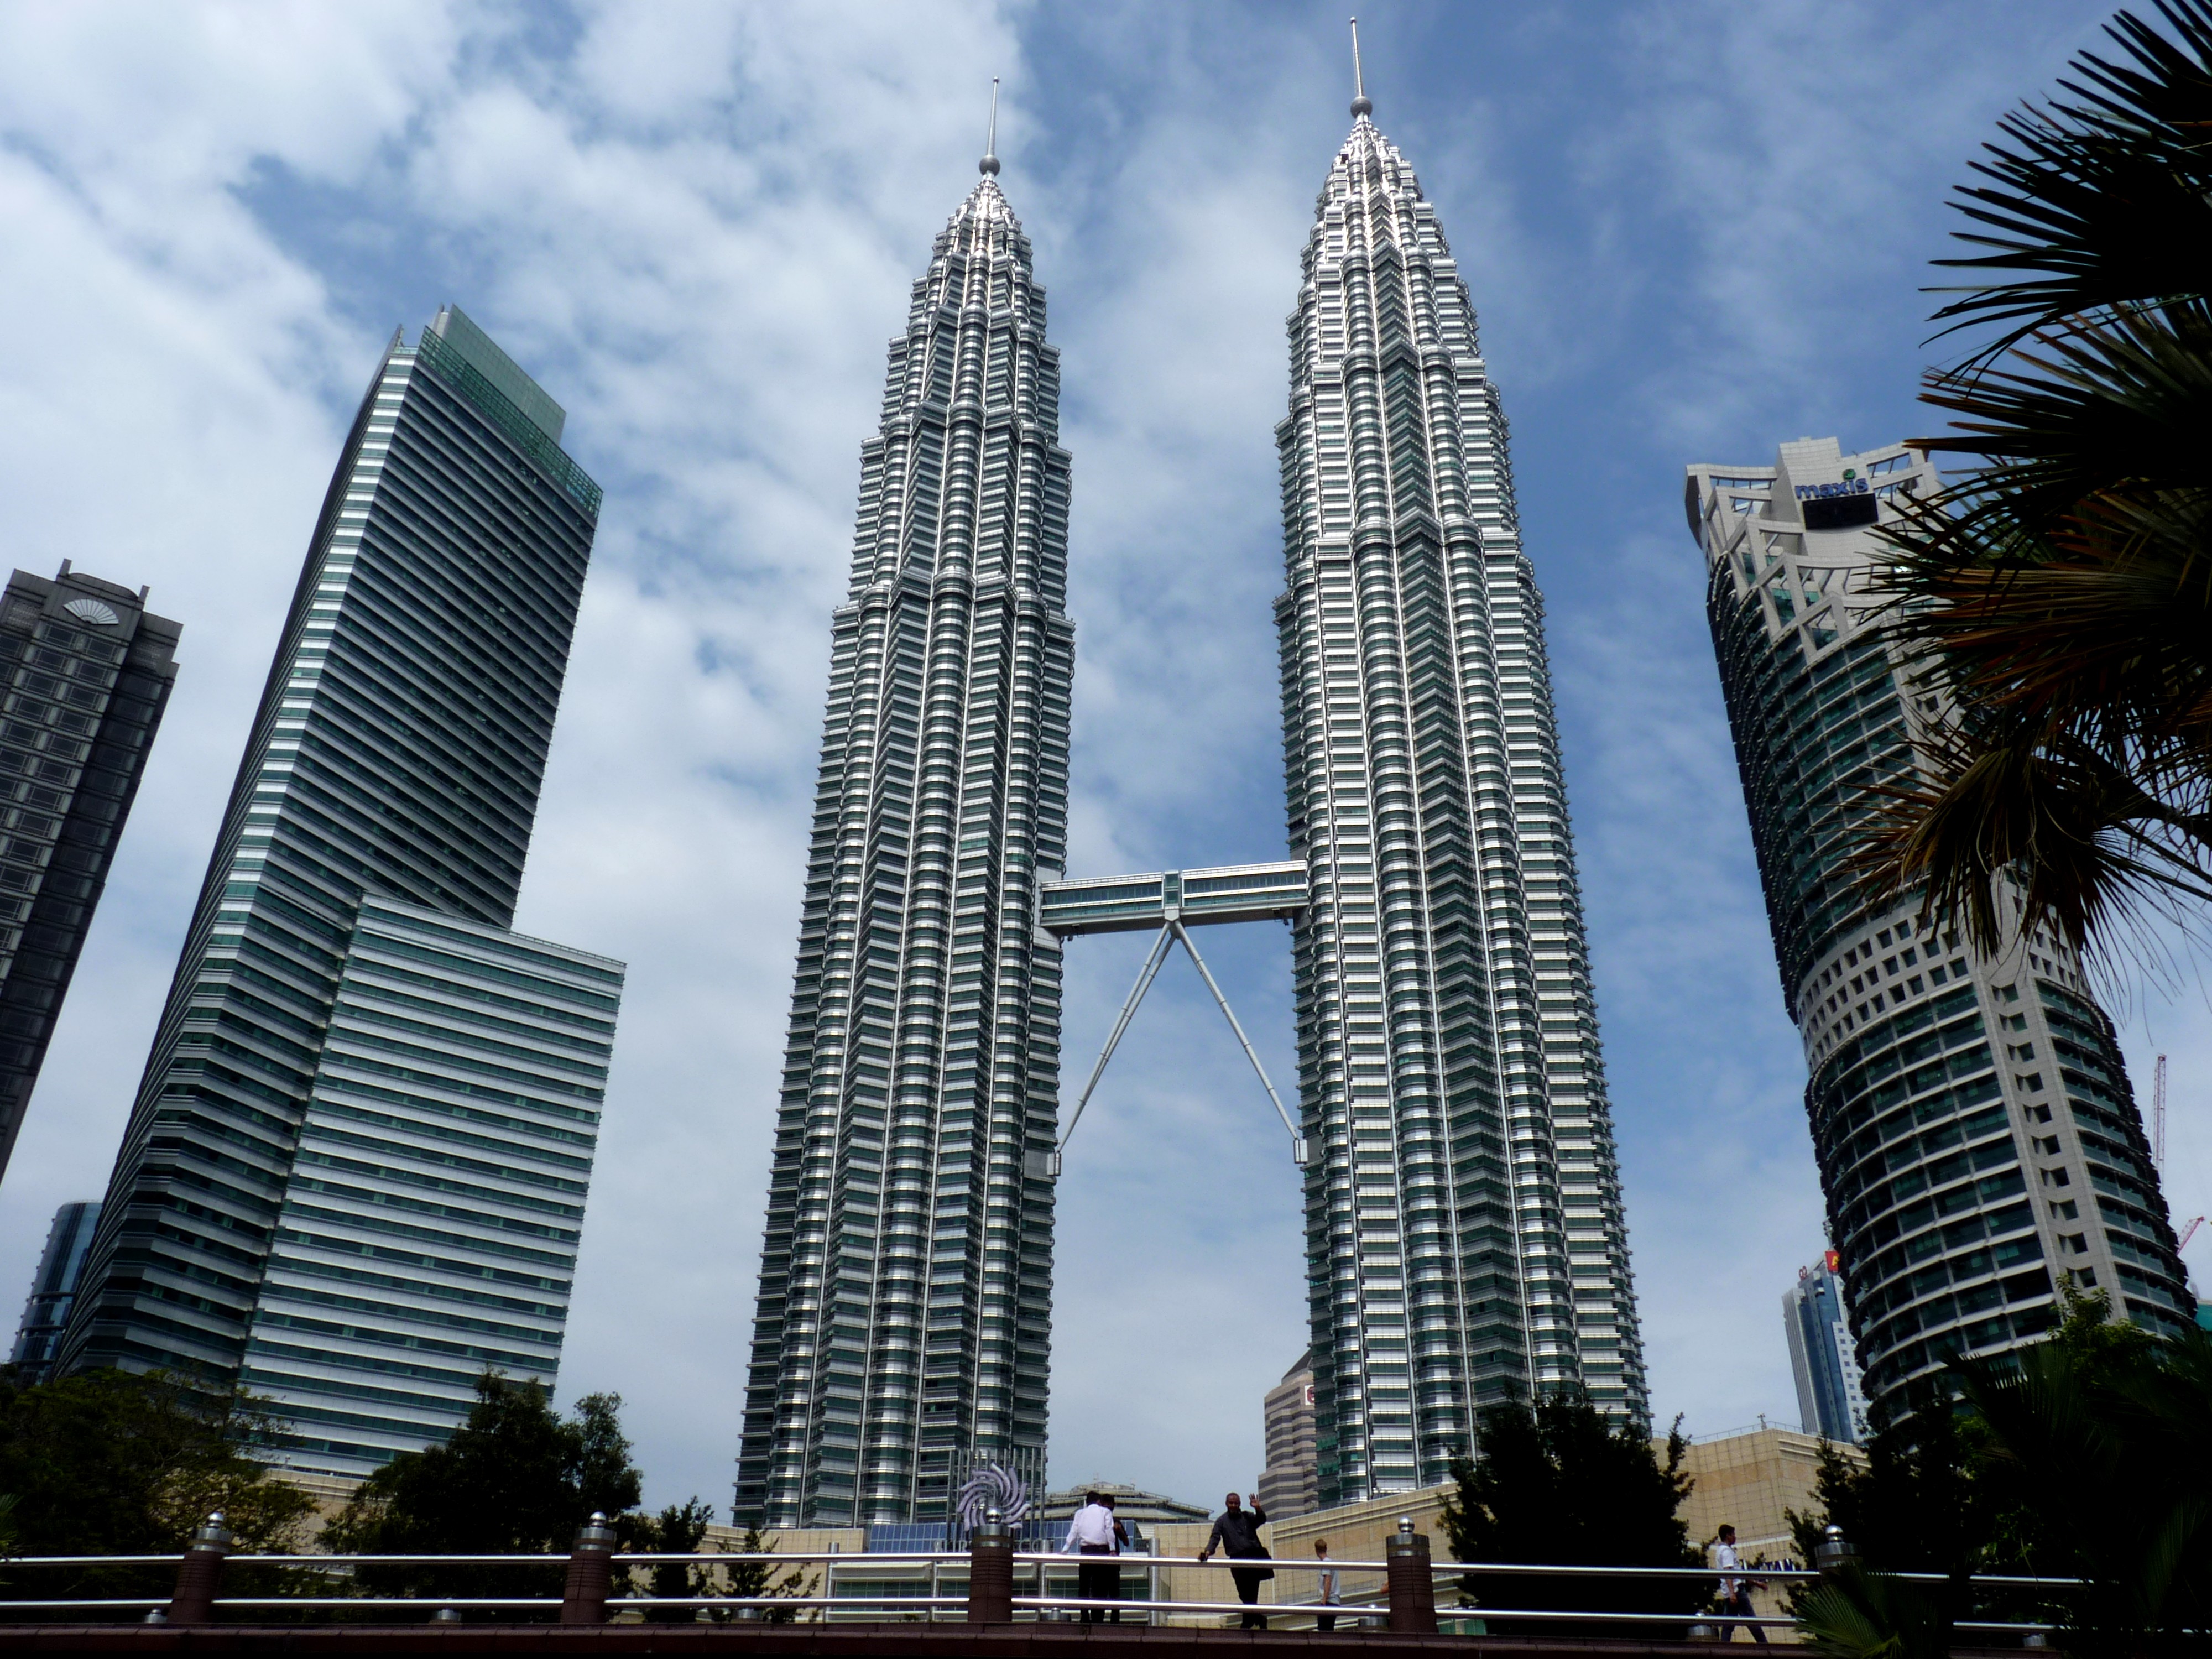 File:The Petronas Twin Towers in Kuala Lumpur (Malaysia).JPG ...